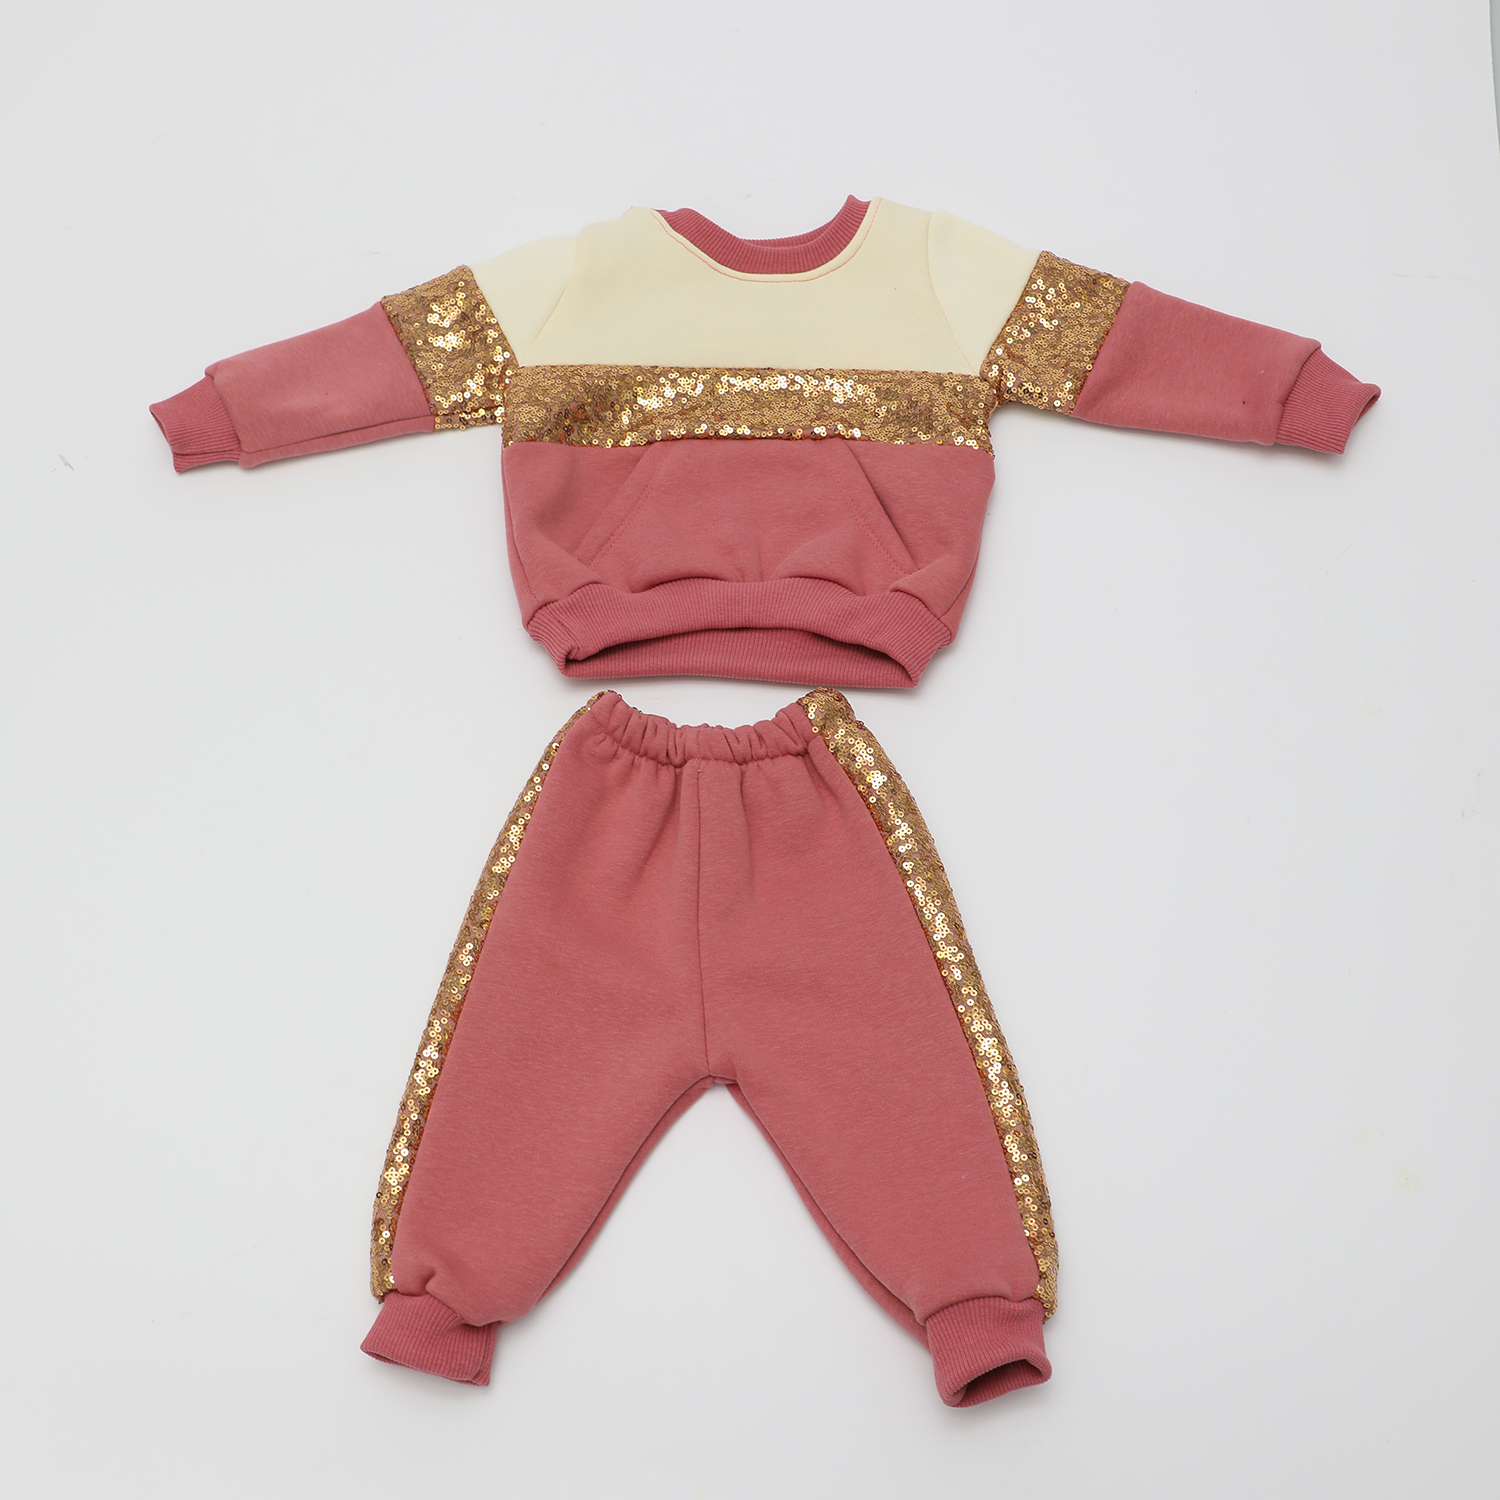 Παιδικά/Baby/Ρούχα/Σετ SAM 0-13 - Βρεφικό σετ φόρμας SAM 0-13 εκρού ροζ χρυσό